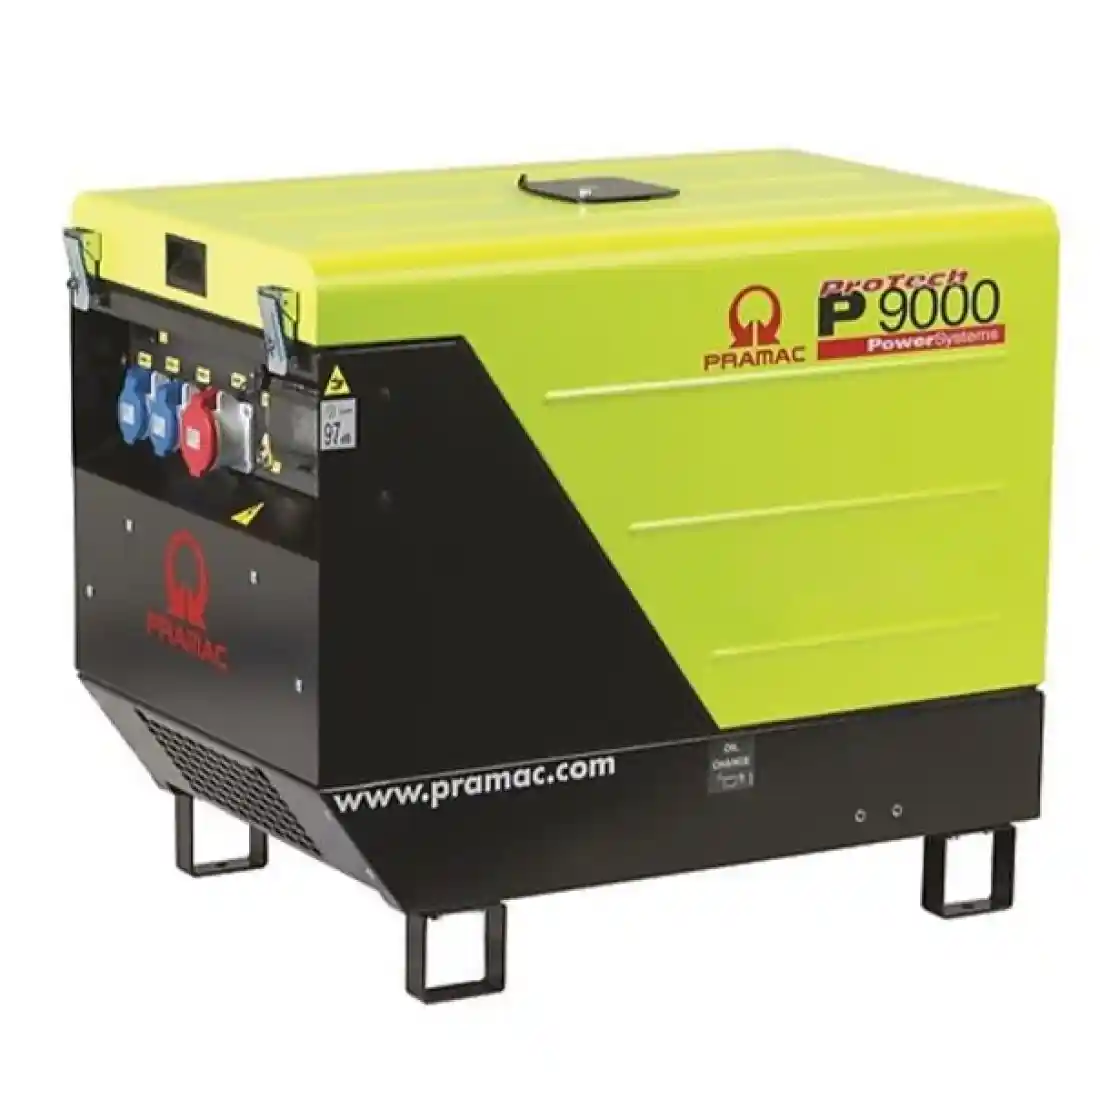 Pramac P9000 8.5kw 400V AVR Three Phase Diesel Generator